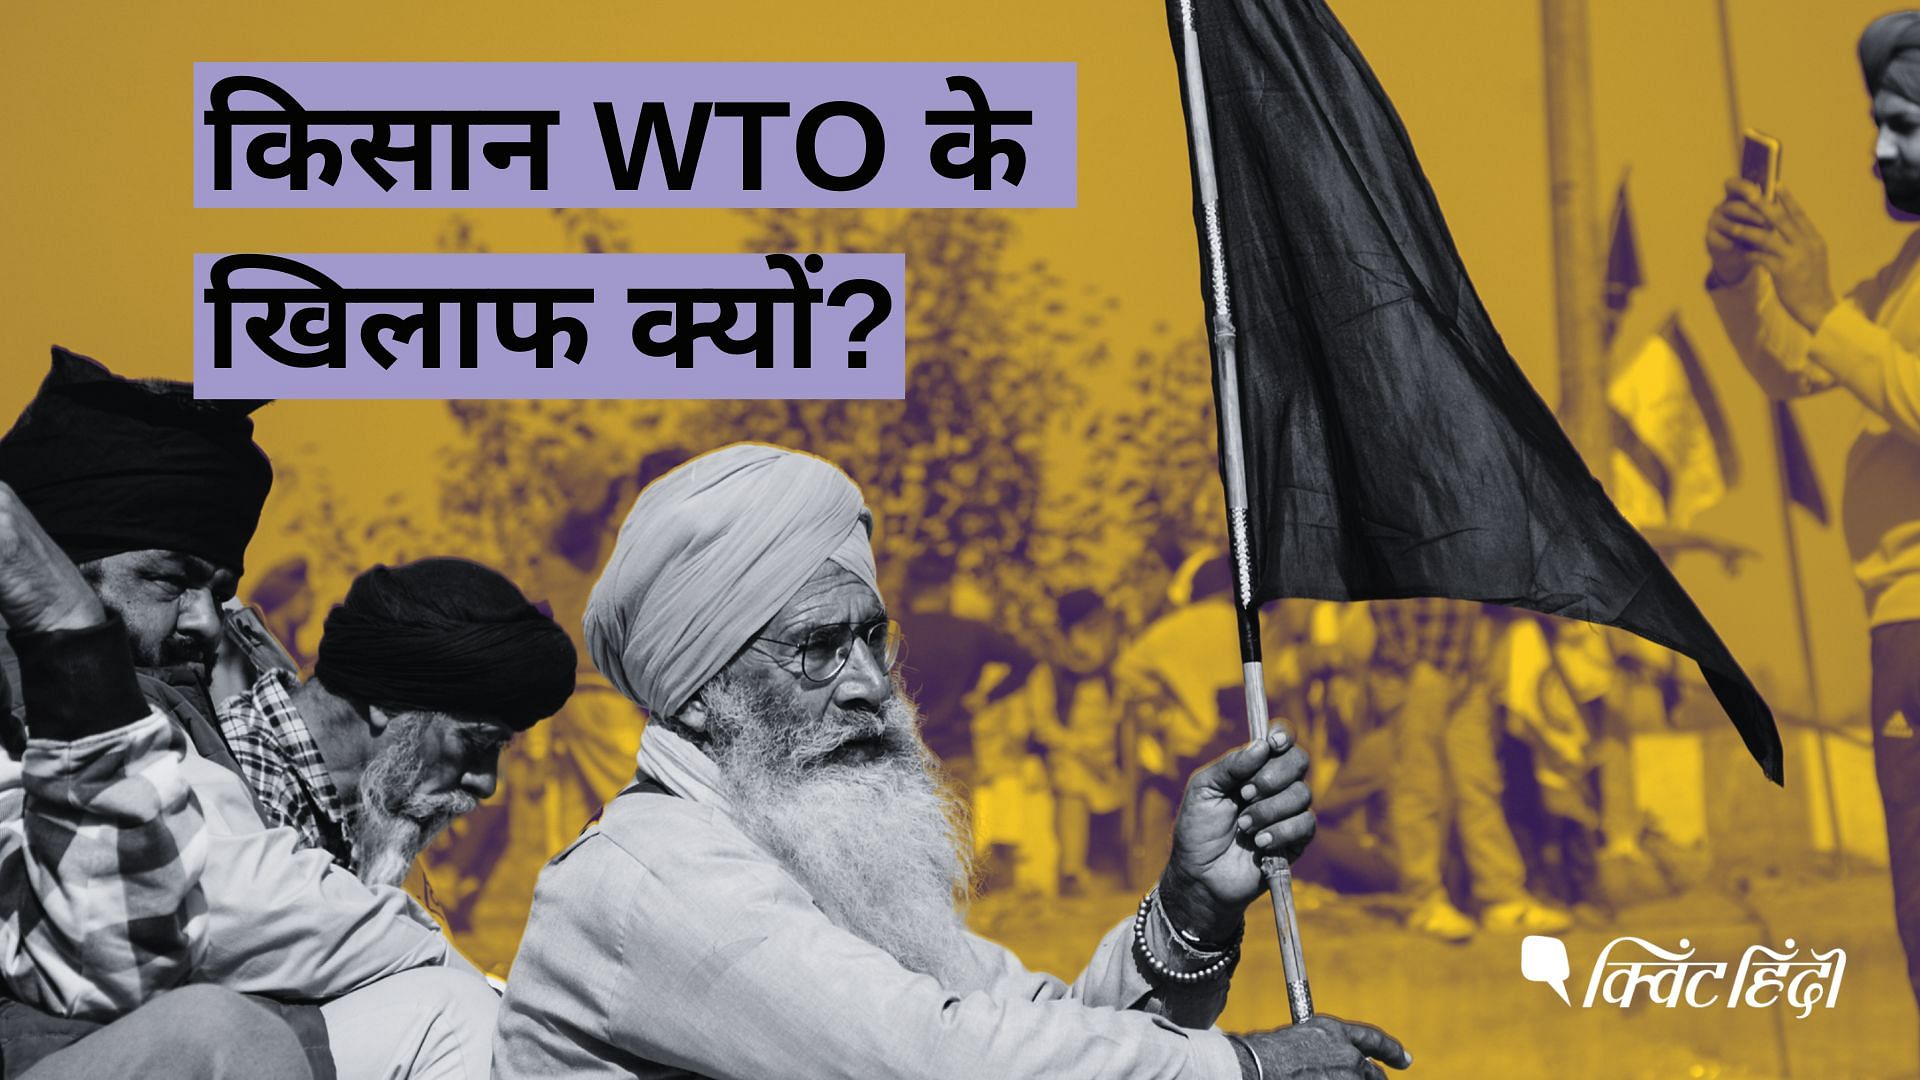 <div class="paragraphs"><p>Farmers Protest: किसान भारत को WTO से बाहर निकालने की मांग क्यों कर रहे हैं?</p></div>